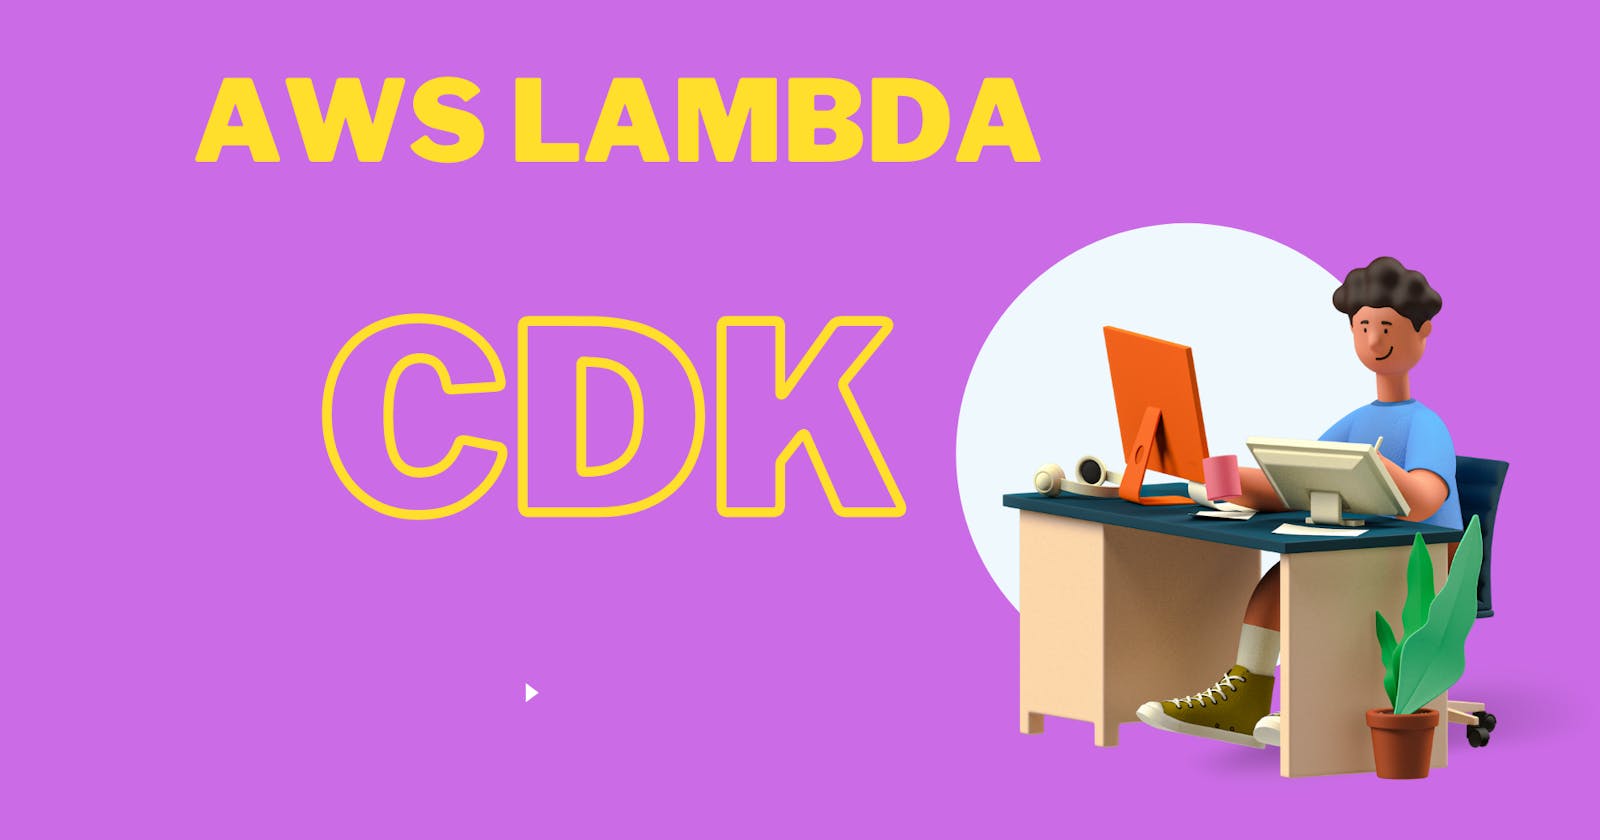 AWS Lambda using CDK